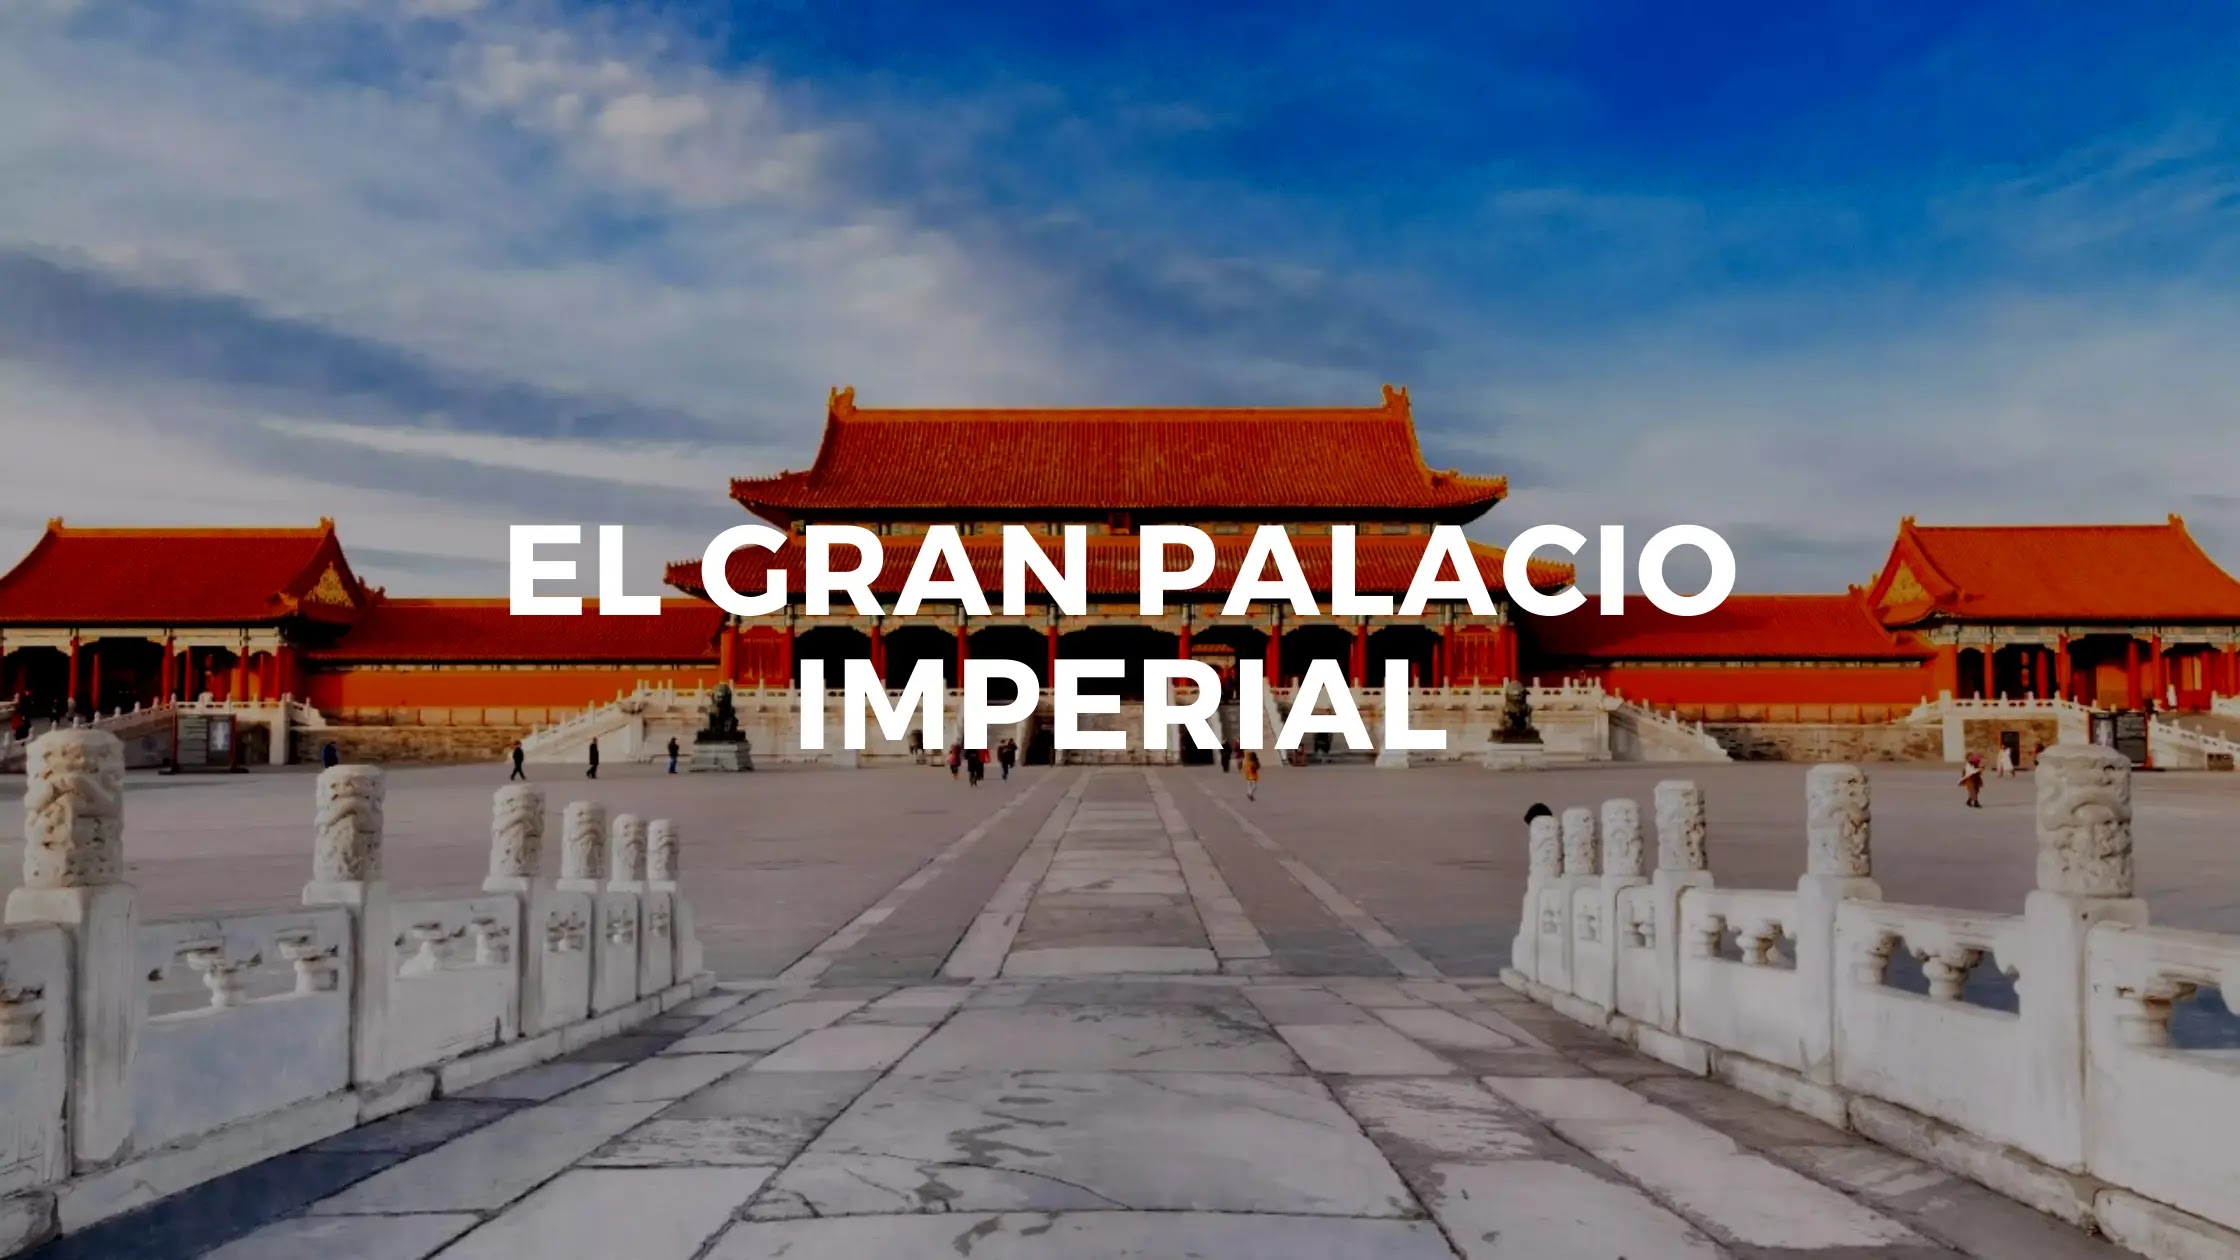 El Gran Palacio Imperial